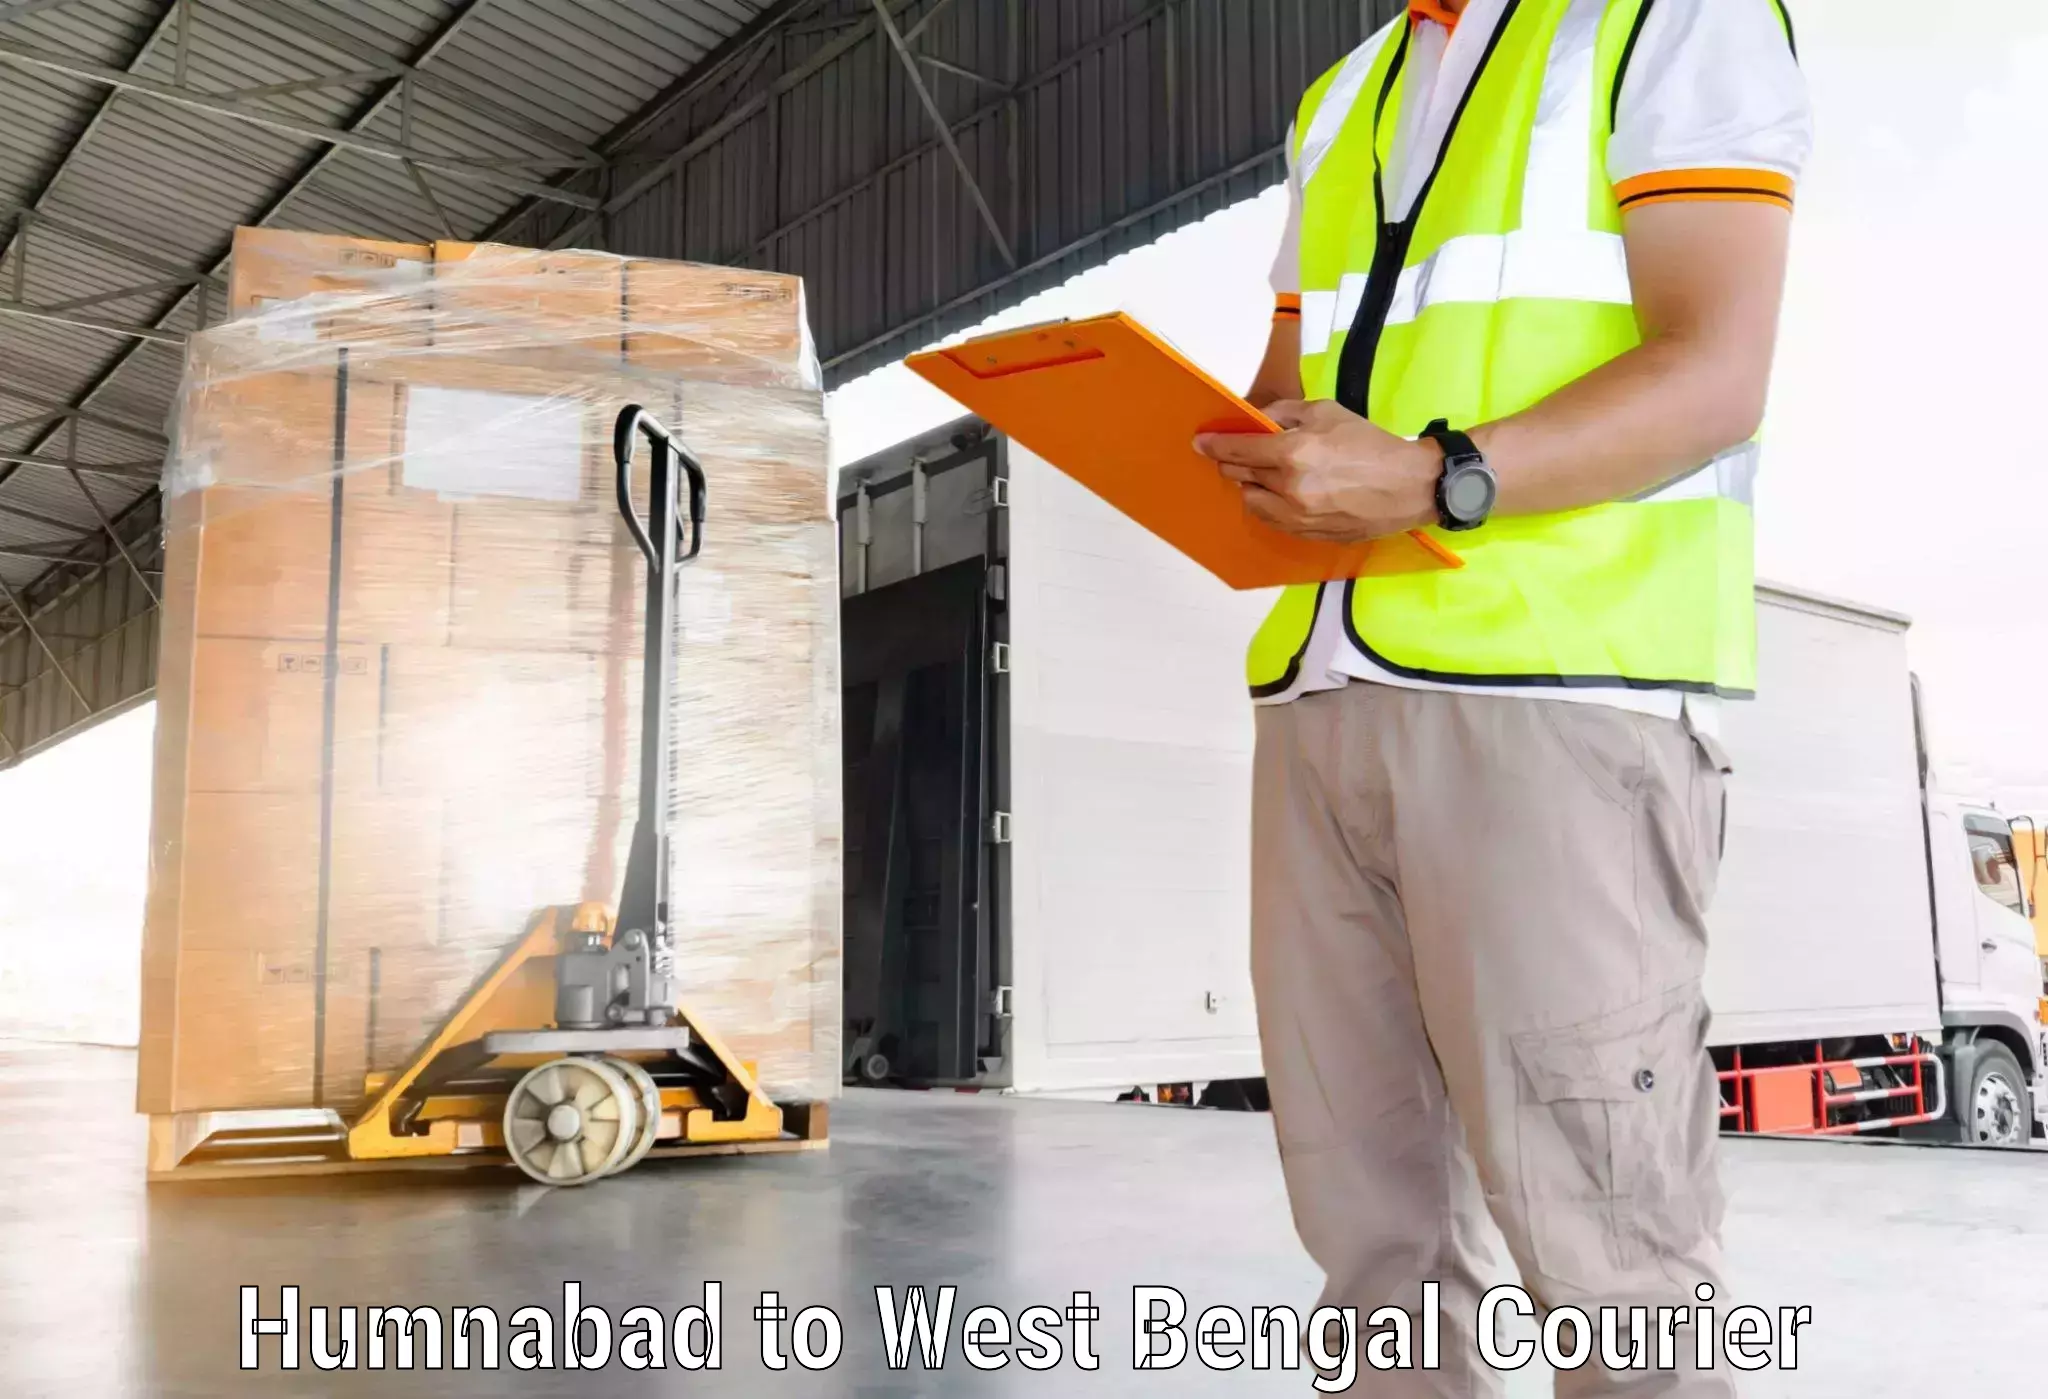 International courier networks Humnabad to Maheshtala